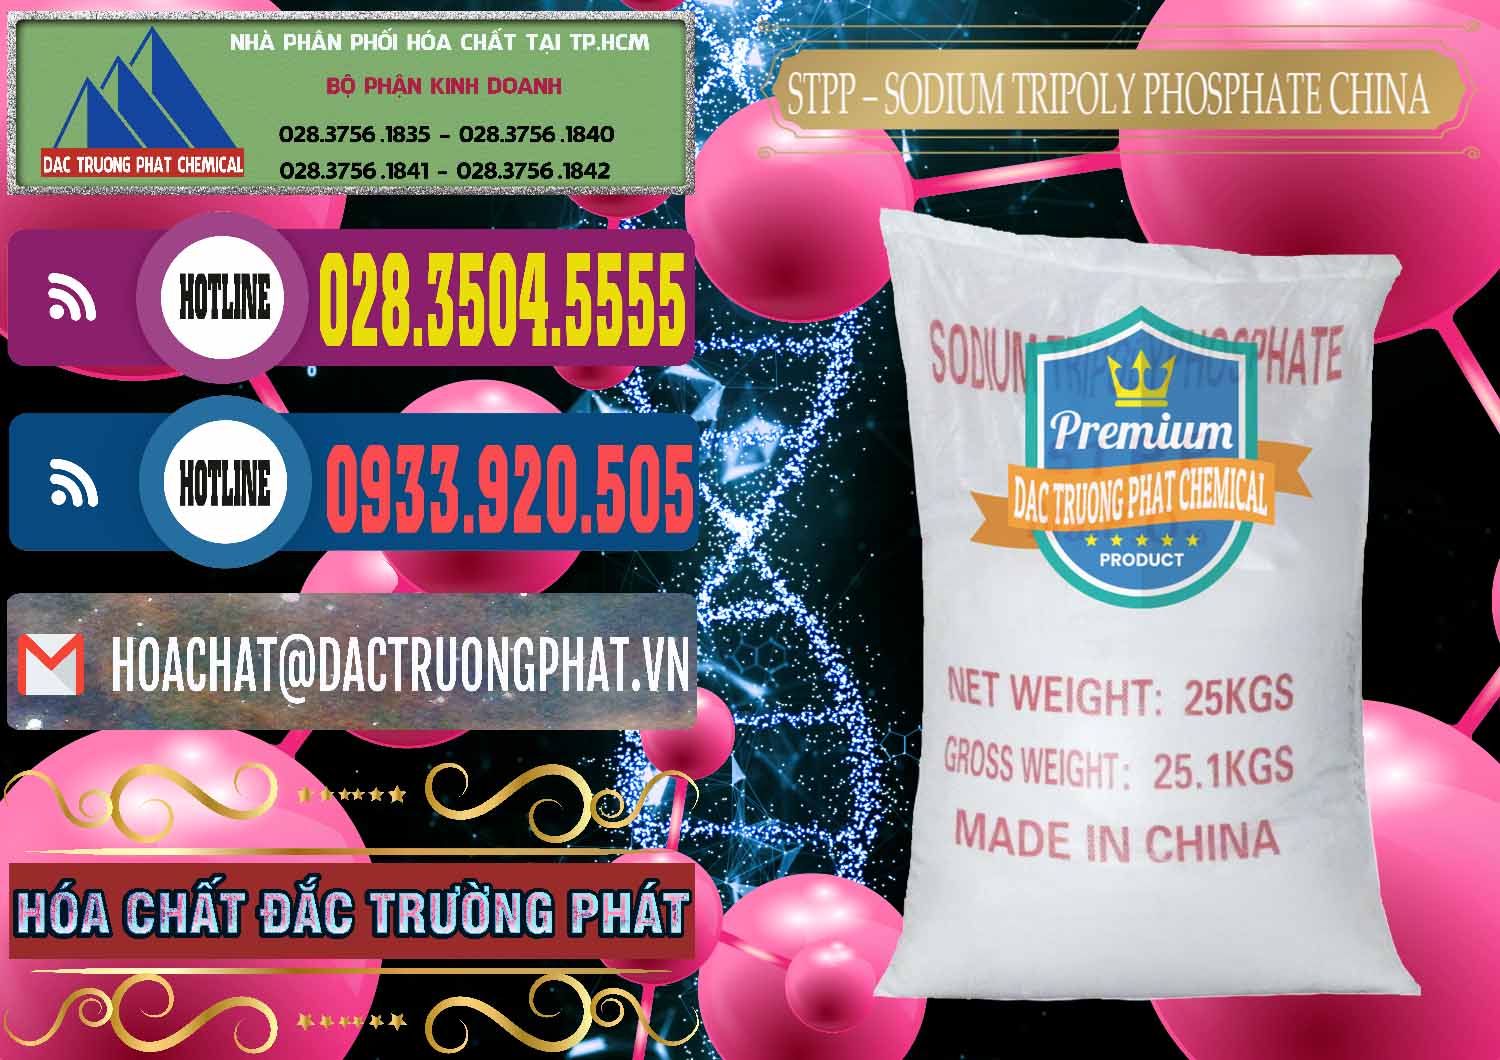 Công ty chuyên phân phối - bán Sodium Tripoly Phosphate - STPP 96% Chữ Đỏ Trung Quốc China - 0155 - Công ty cung cấp và kinh doanh hóa chất tại TP.HCM - muabanhoachat.com.vn